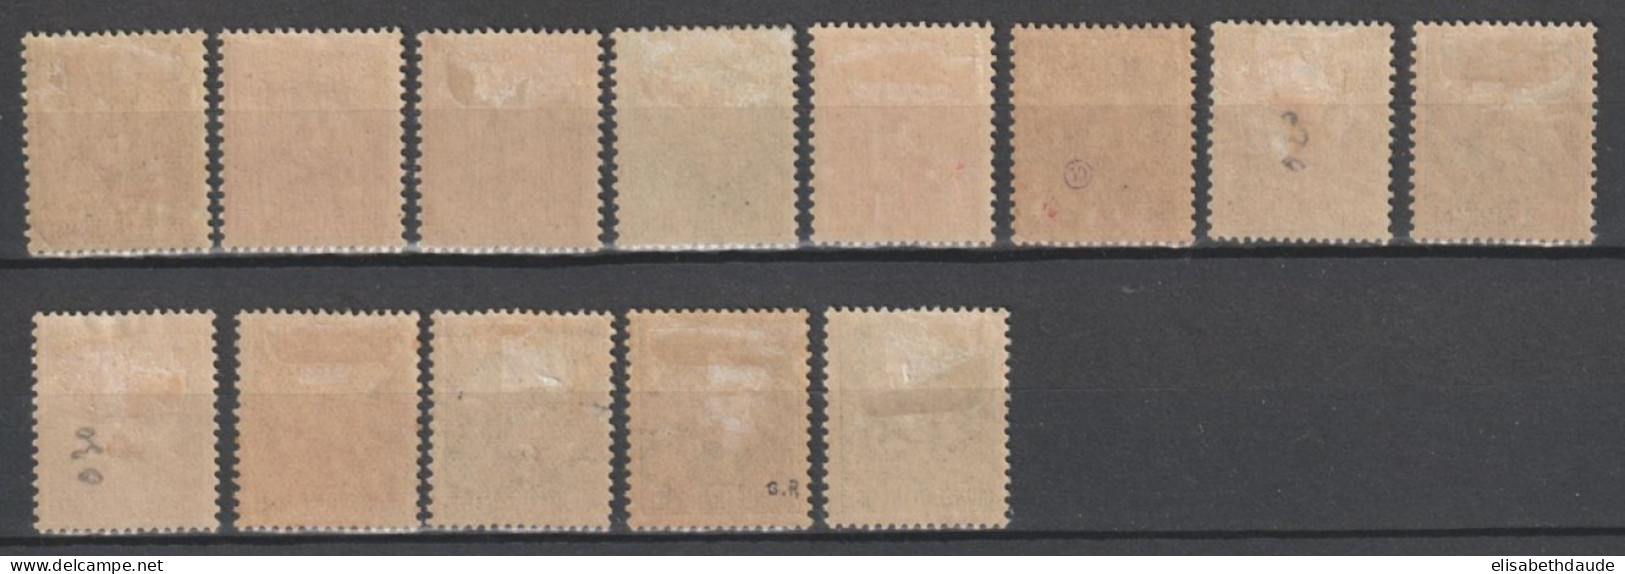 GUINEE - 1904 - YVERT N° 18/30 * MH - COTE = 255 EUR. - Unused Stamps